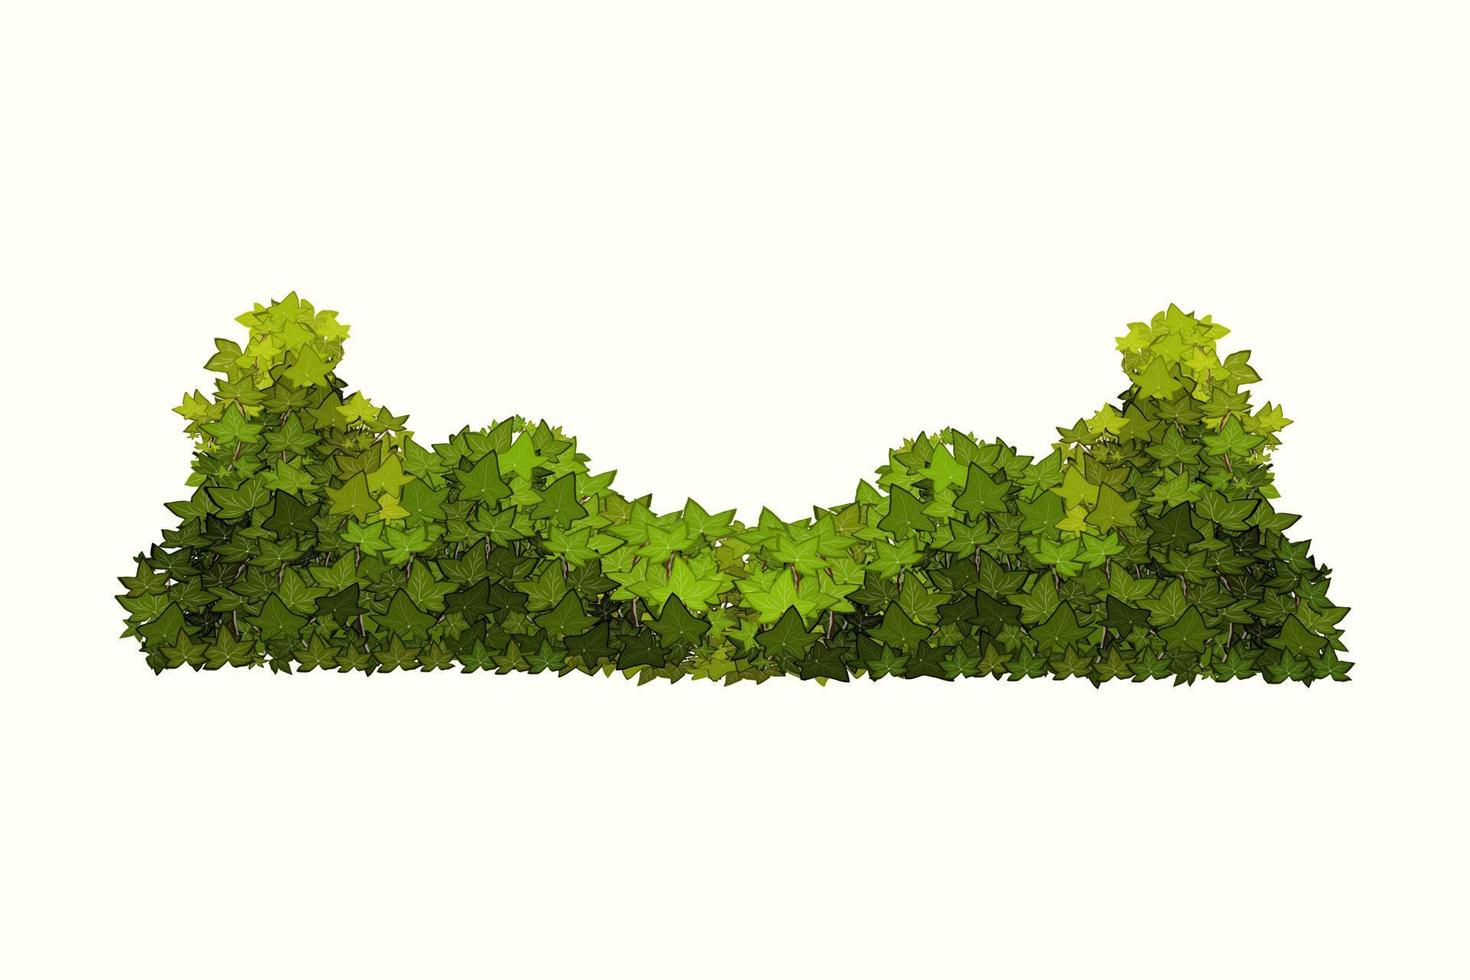 pianta verde ornamentale sotto forma di un arbusto da giardino hedge.ivy arch.realistic, cespuglio stagionale, bosso, fogliame del cespuglio della corona dell'albero. vettore